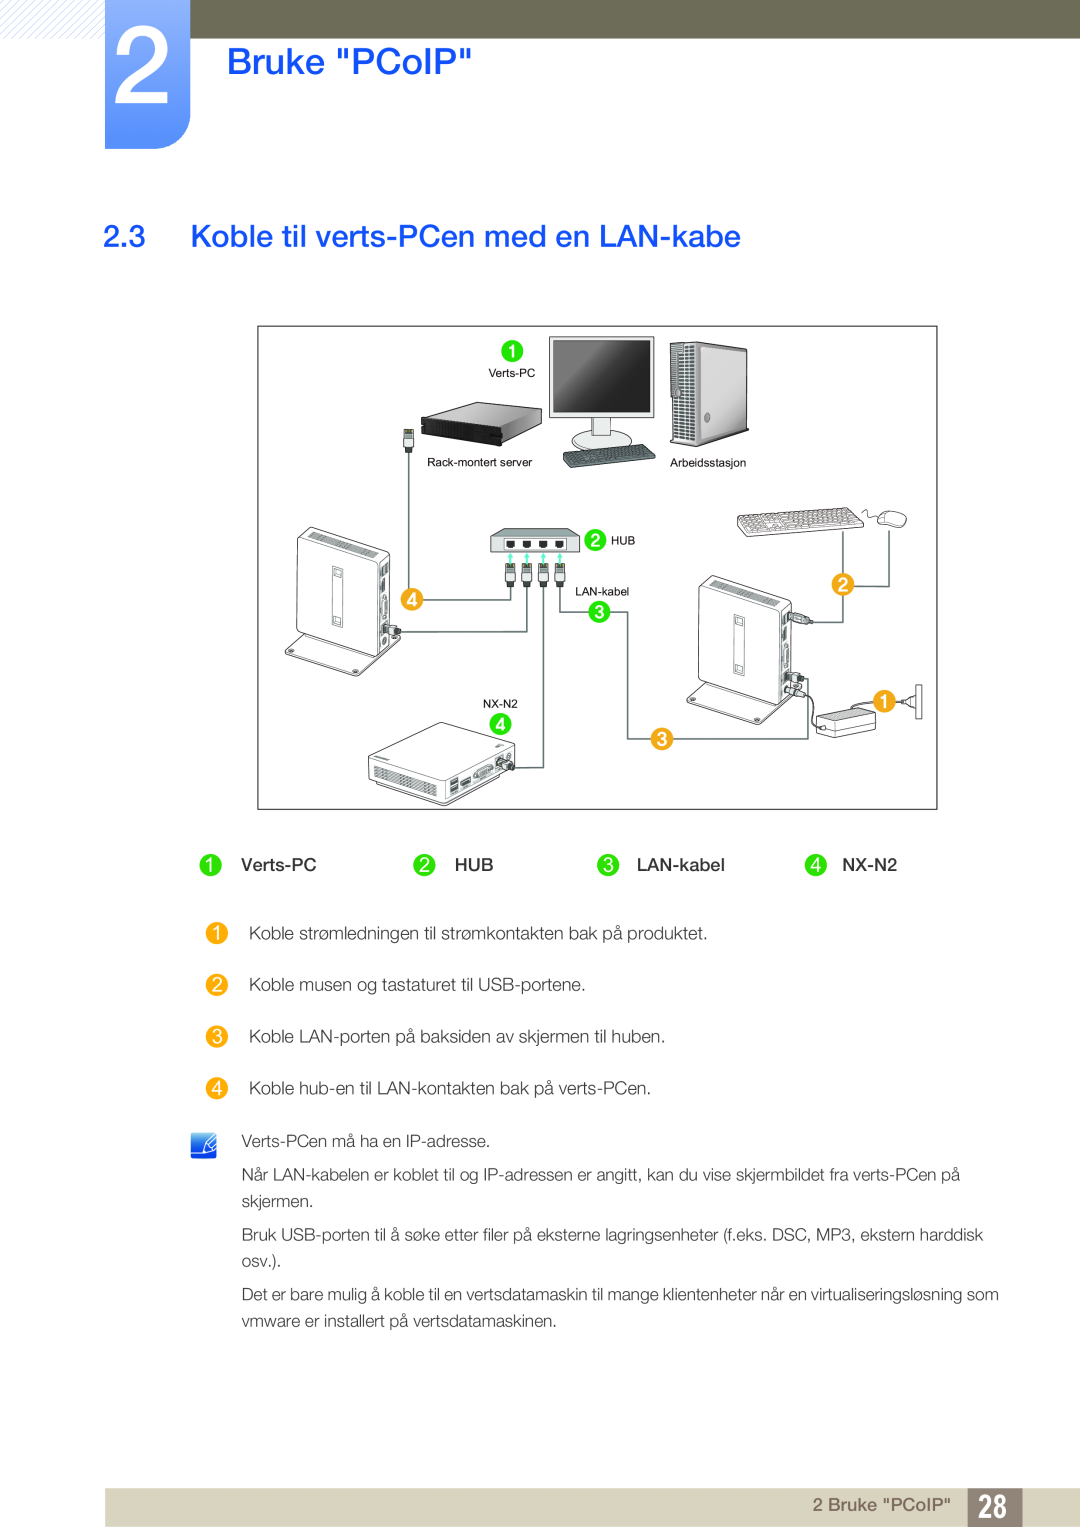 Samsung LF-NXN2N/EN, LF00FNXPFBZXEN manual Koble til verts-PCen med en LAN-kabe, Bruke PCoIP 